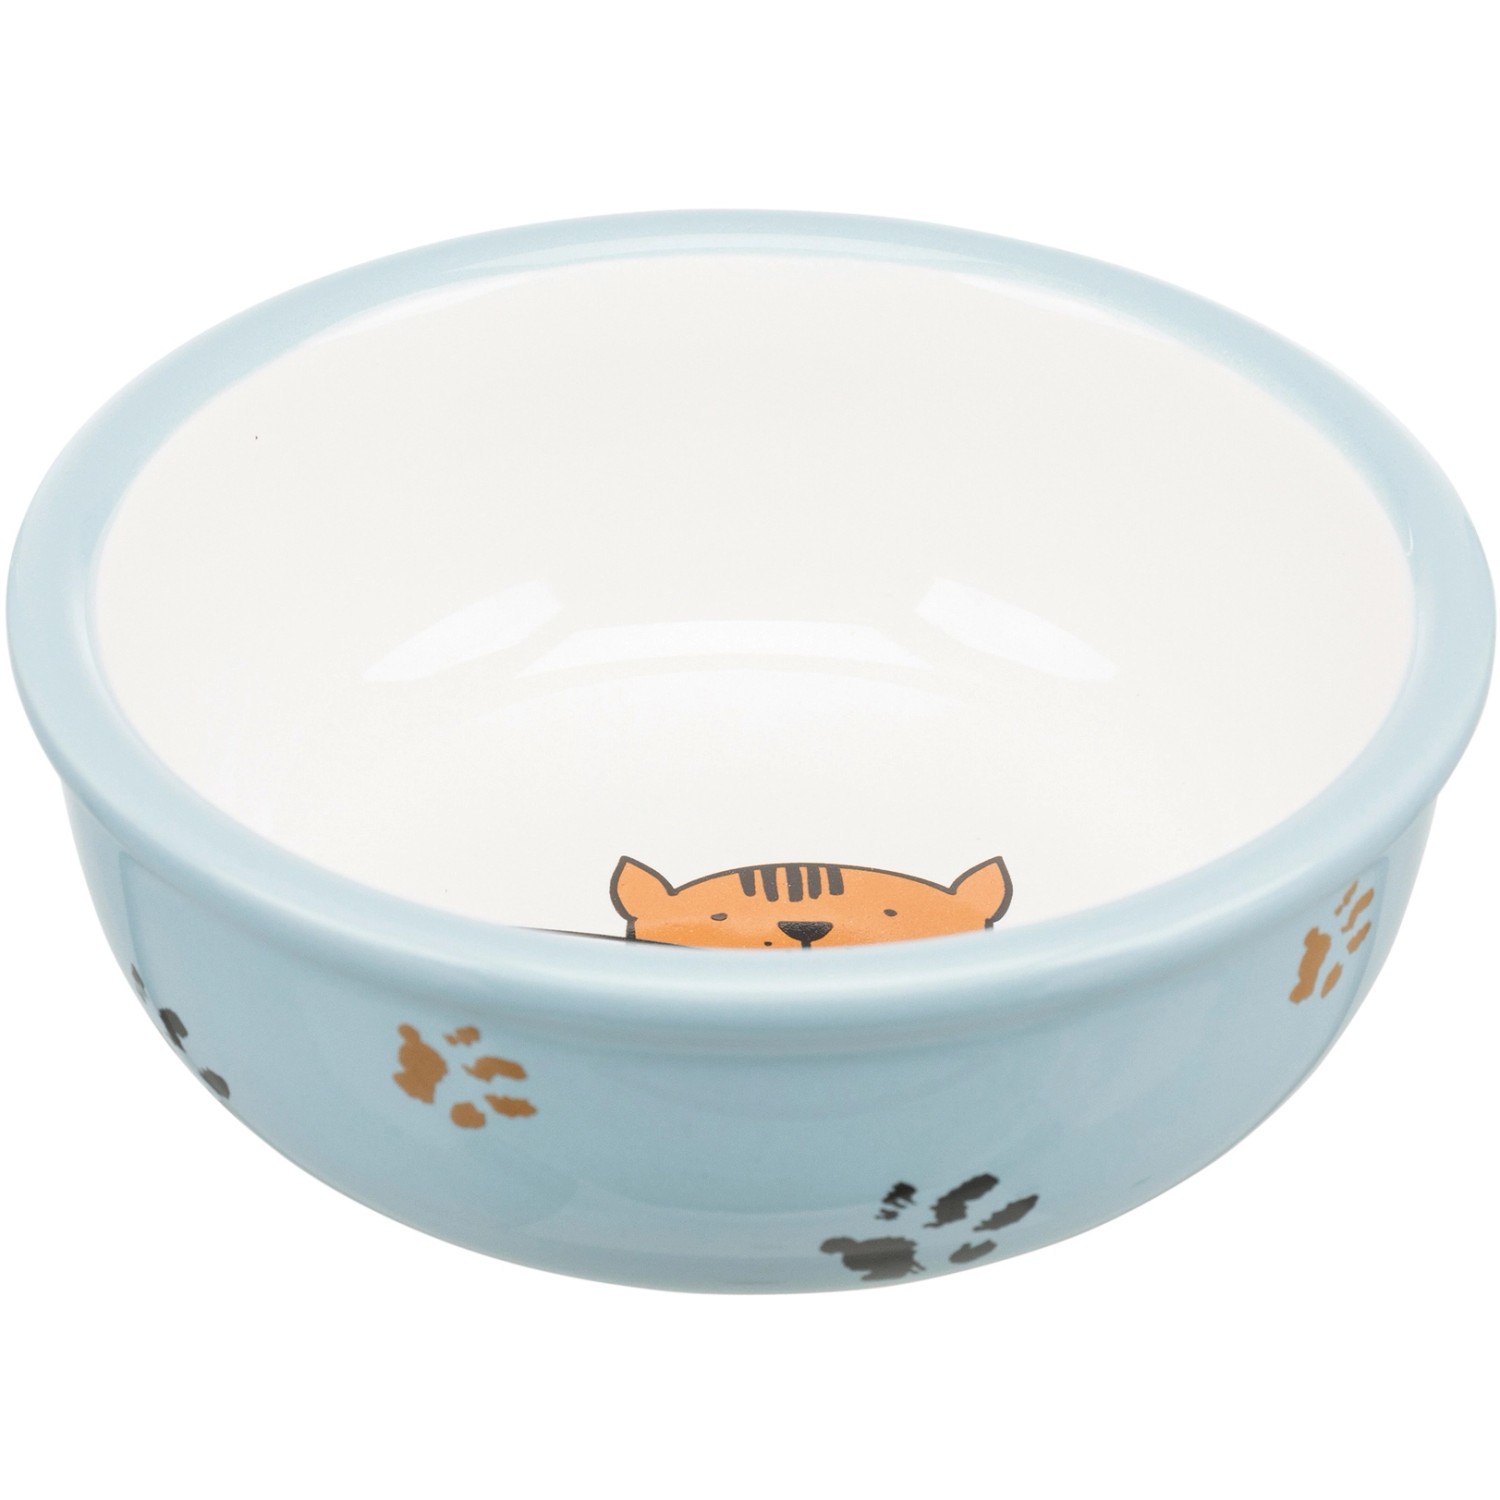 Jollypaw Keramiknapf mit Katzen- und Pfotenmotiv 0,35 l/ ø 13 cm